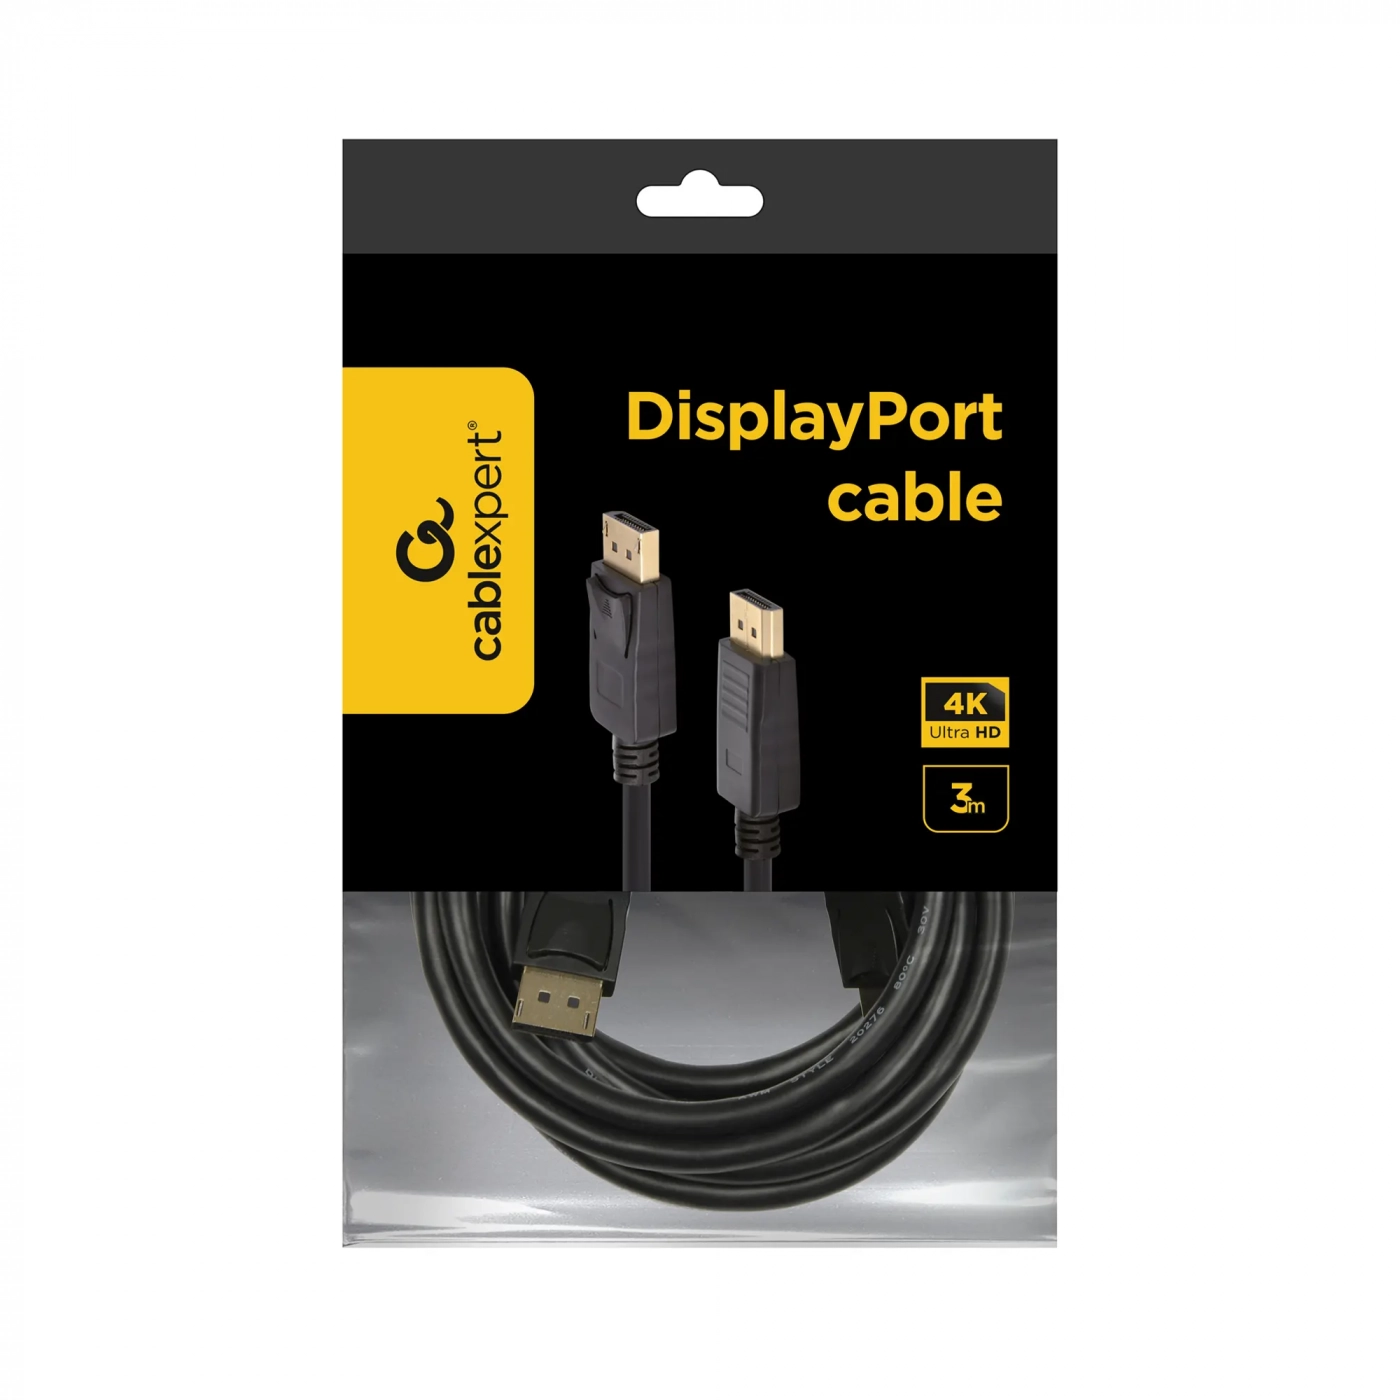 Купить Кабель Cablexpert CC-DP2-10, DisplayPort v1.2 цифровой интерфейс, 3.0 м - фото 3